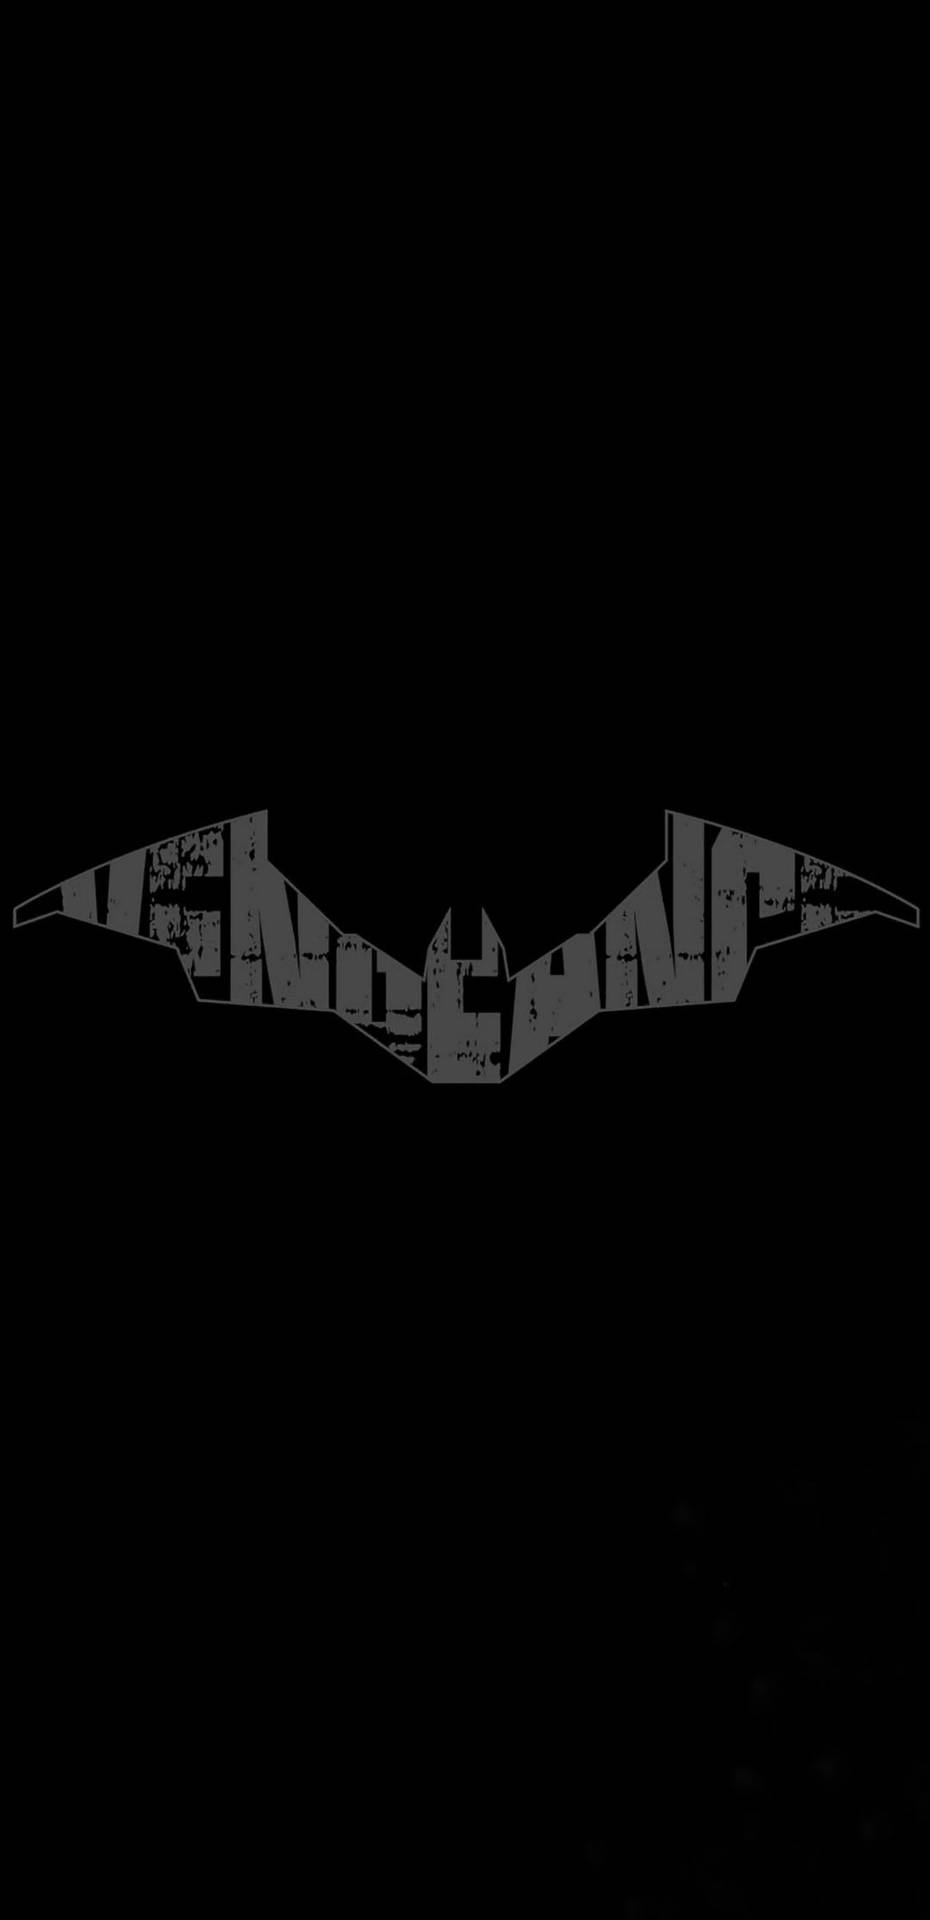 Vengeance Batman Logo iPhone Tapet: Se det klassiske logo fra Batman-legenden på dette dramatiske tapet. Wallpaper